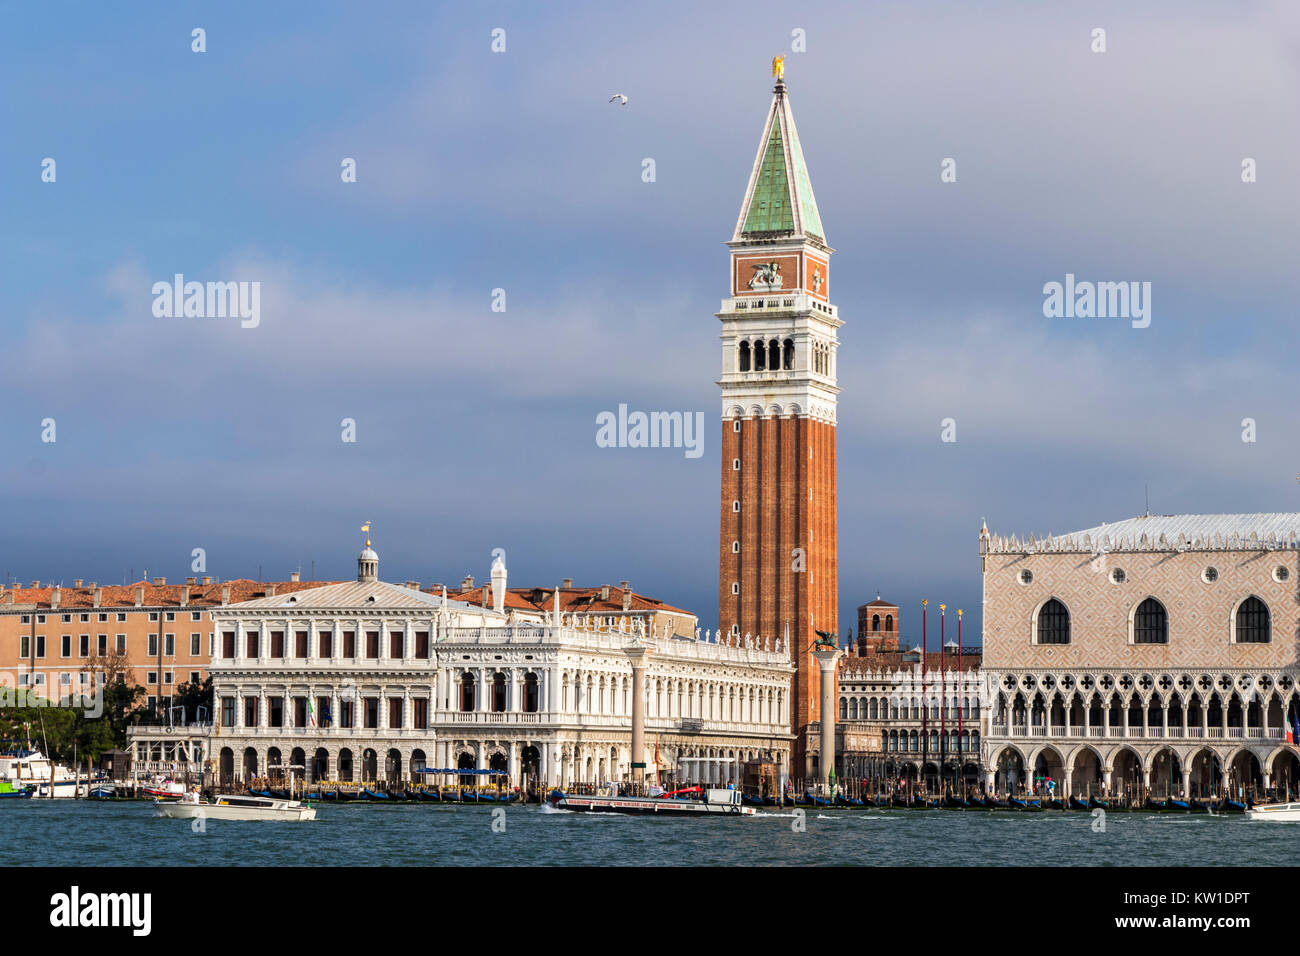 Vistas de Venecia, con el Campanile di San Marco, el Campanile de San Marcos), la Biblioteca Nazionale Marciana (Biblioteca Nacional de San Marcos) y la Foto de stock